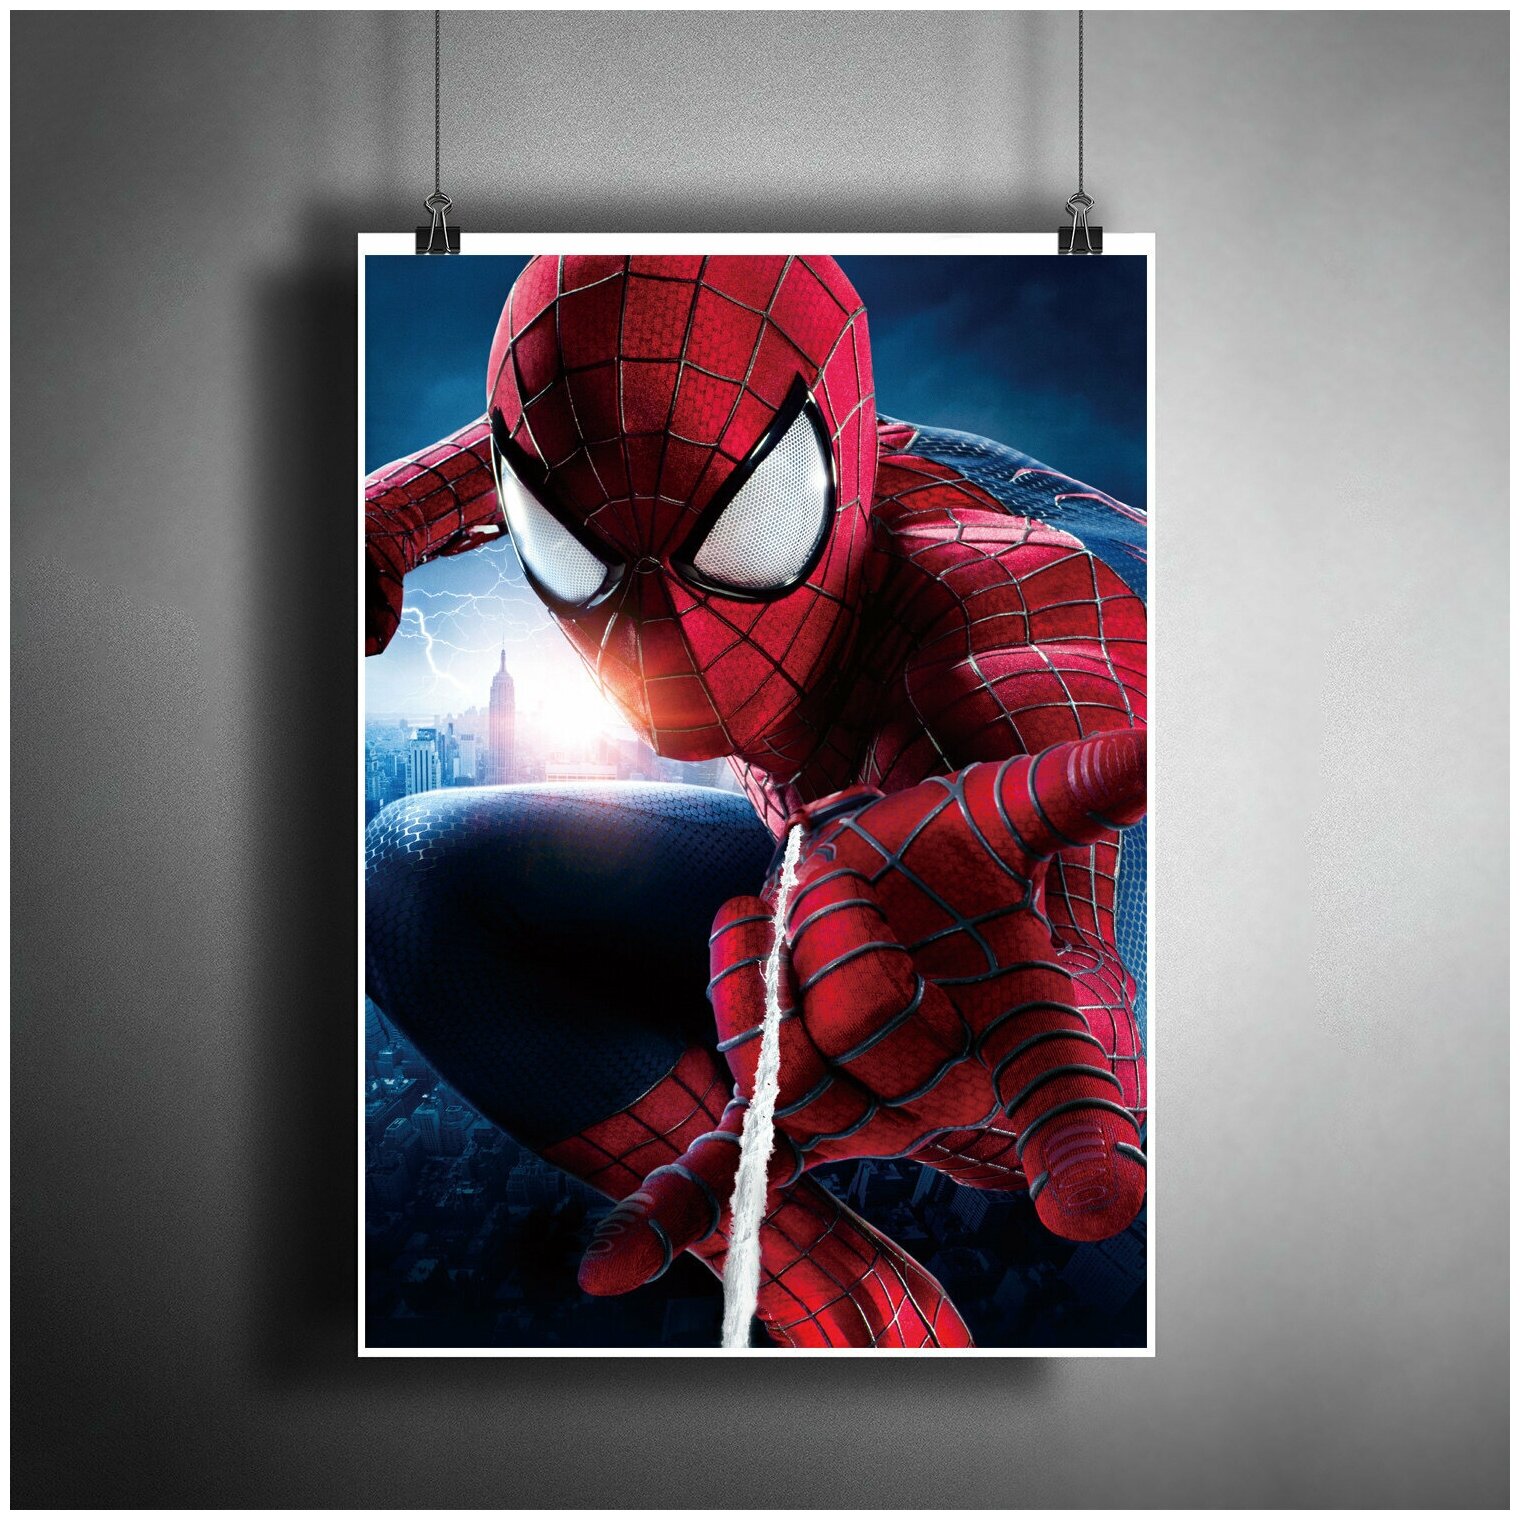 Постер плакат для интерьера "Фильм: Человек-паук. Spider-Man. Комиксы Марвел" / Декор дома, офиса, комнаты, квартиры A3 (297 x 420 мм)